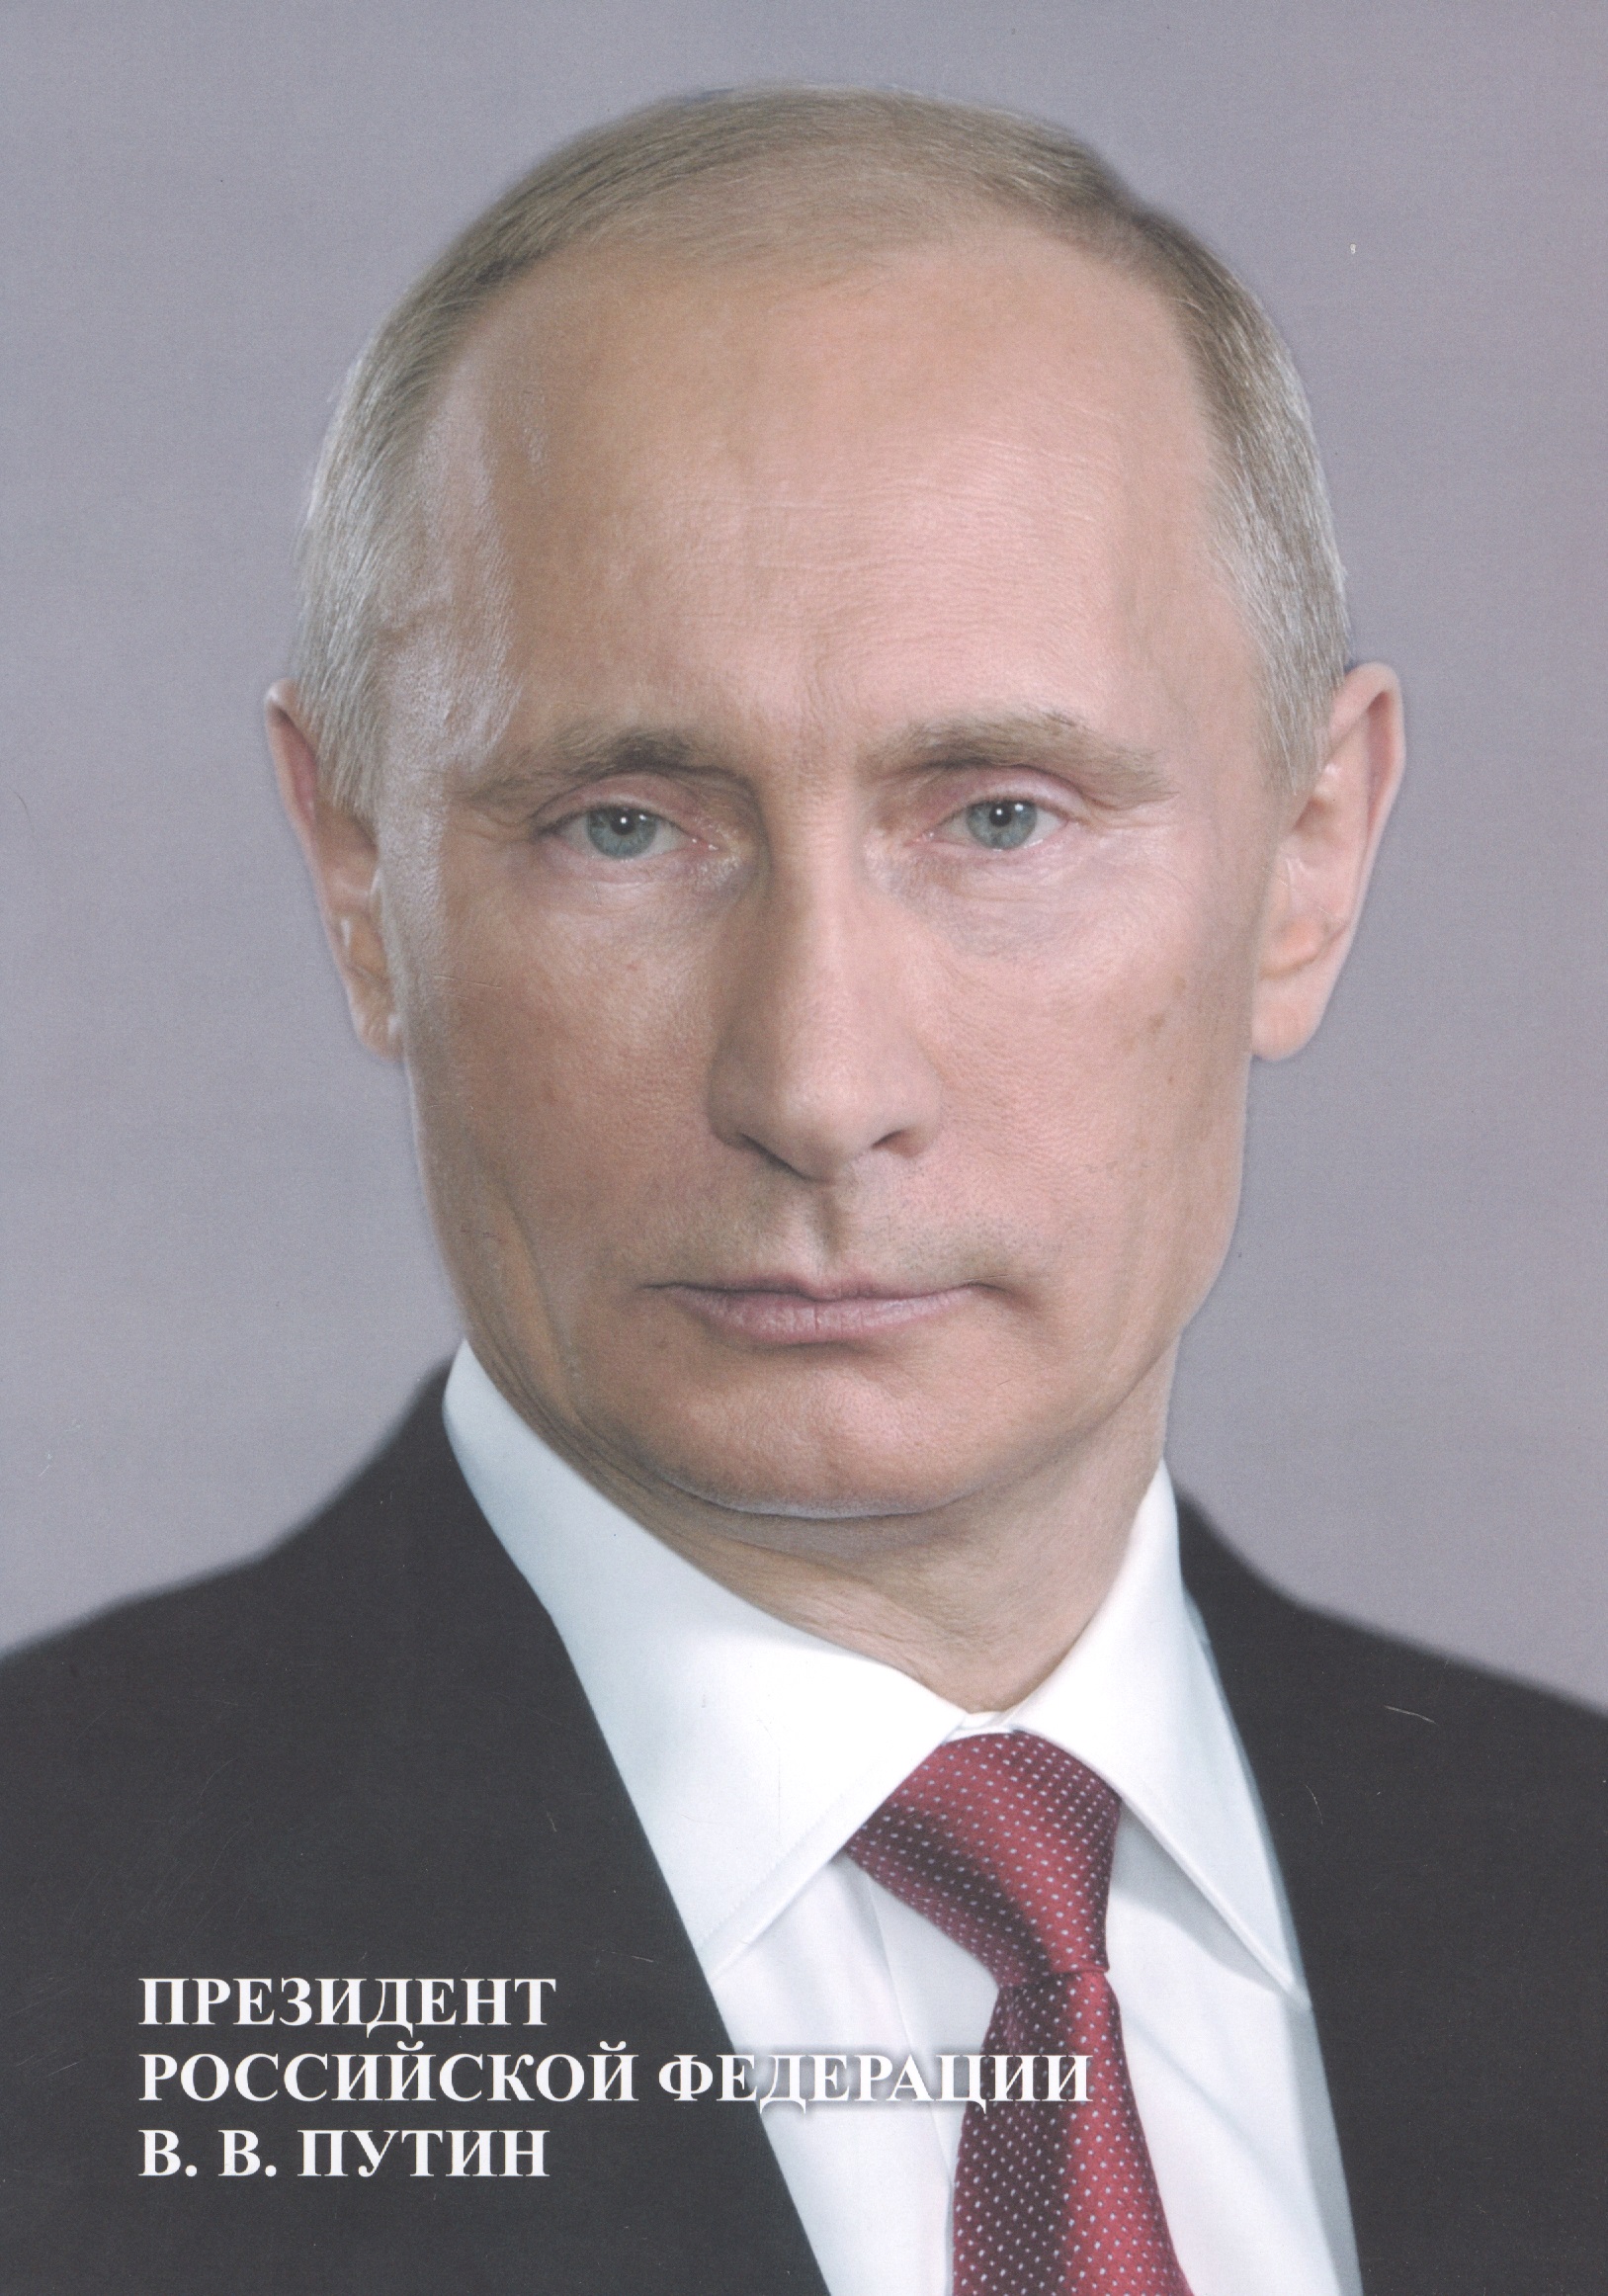 Портрет Президент Российской Федерации В. В. Путин портрет президента российской федерации путина в в